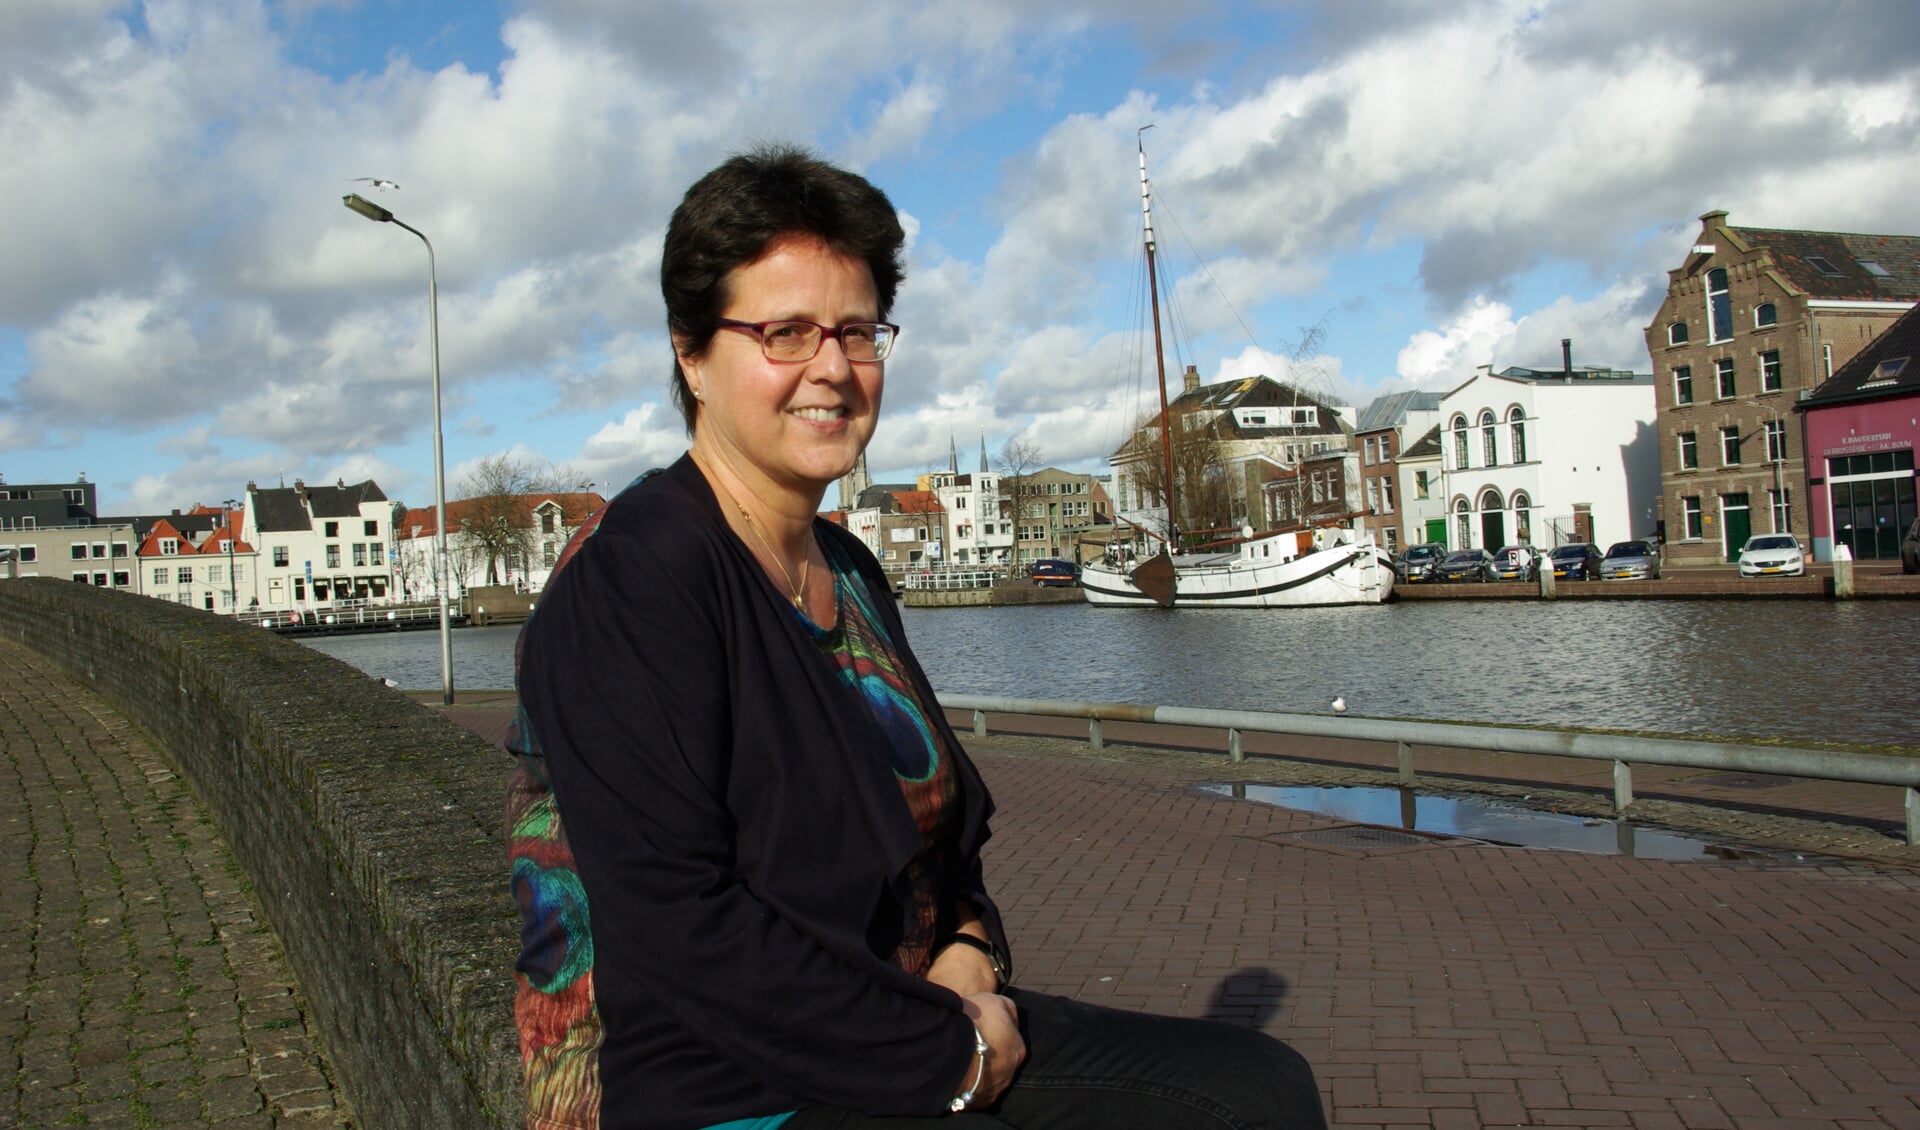 VTV-consulent Petra van der Meer begeleidt vrijwilligers die zich graag voor een ander inzetten. (foto: Jesper Neeleman)